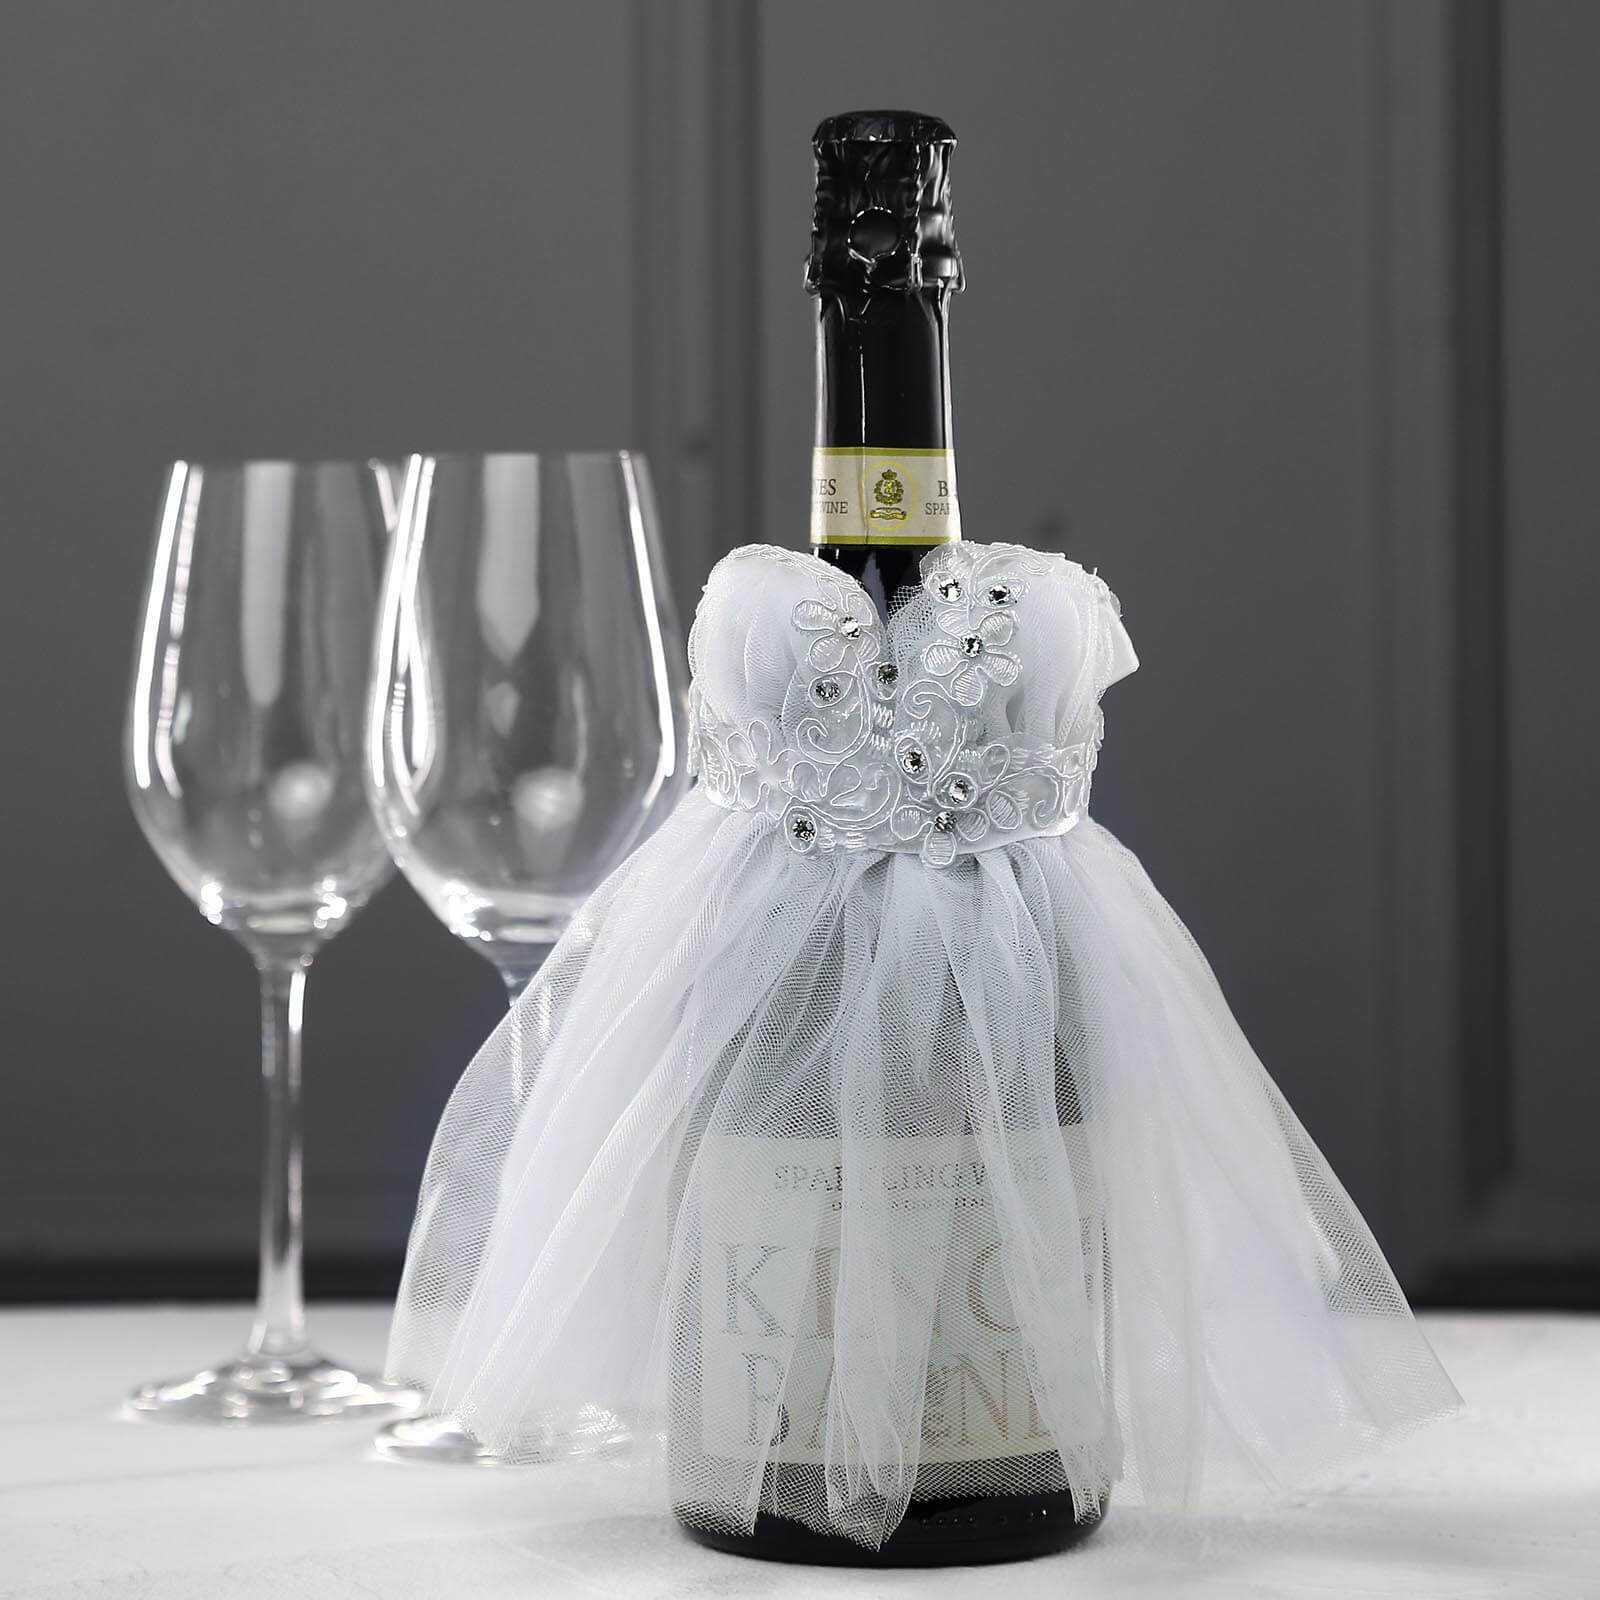 White Wedding Dress Wine Bottle Koozie, Bottle Cover